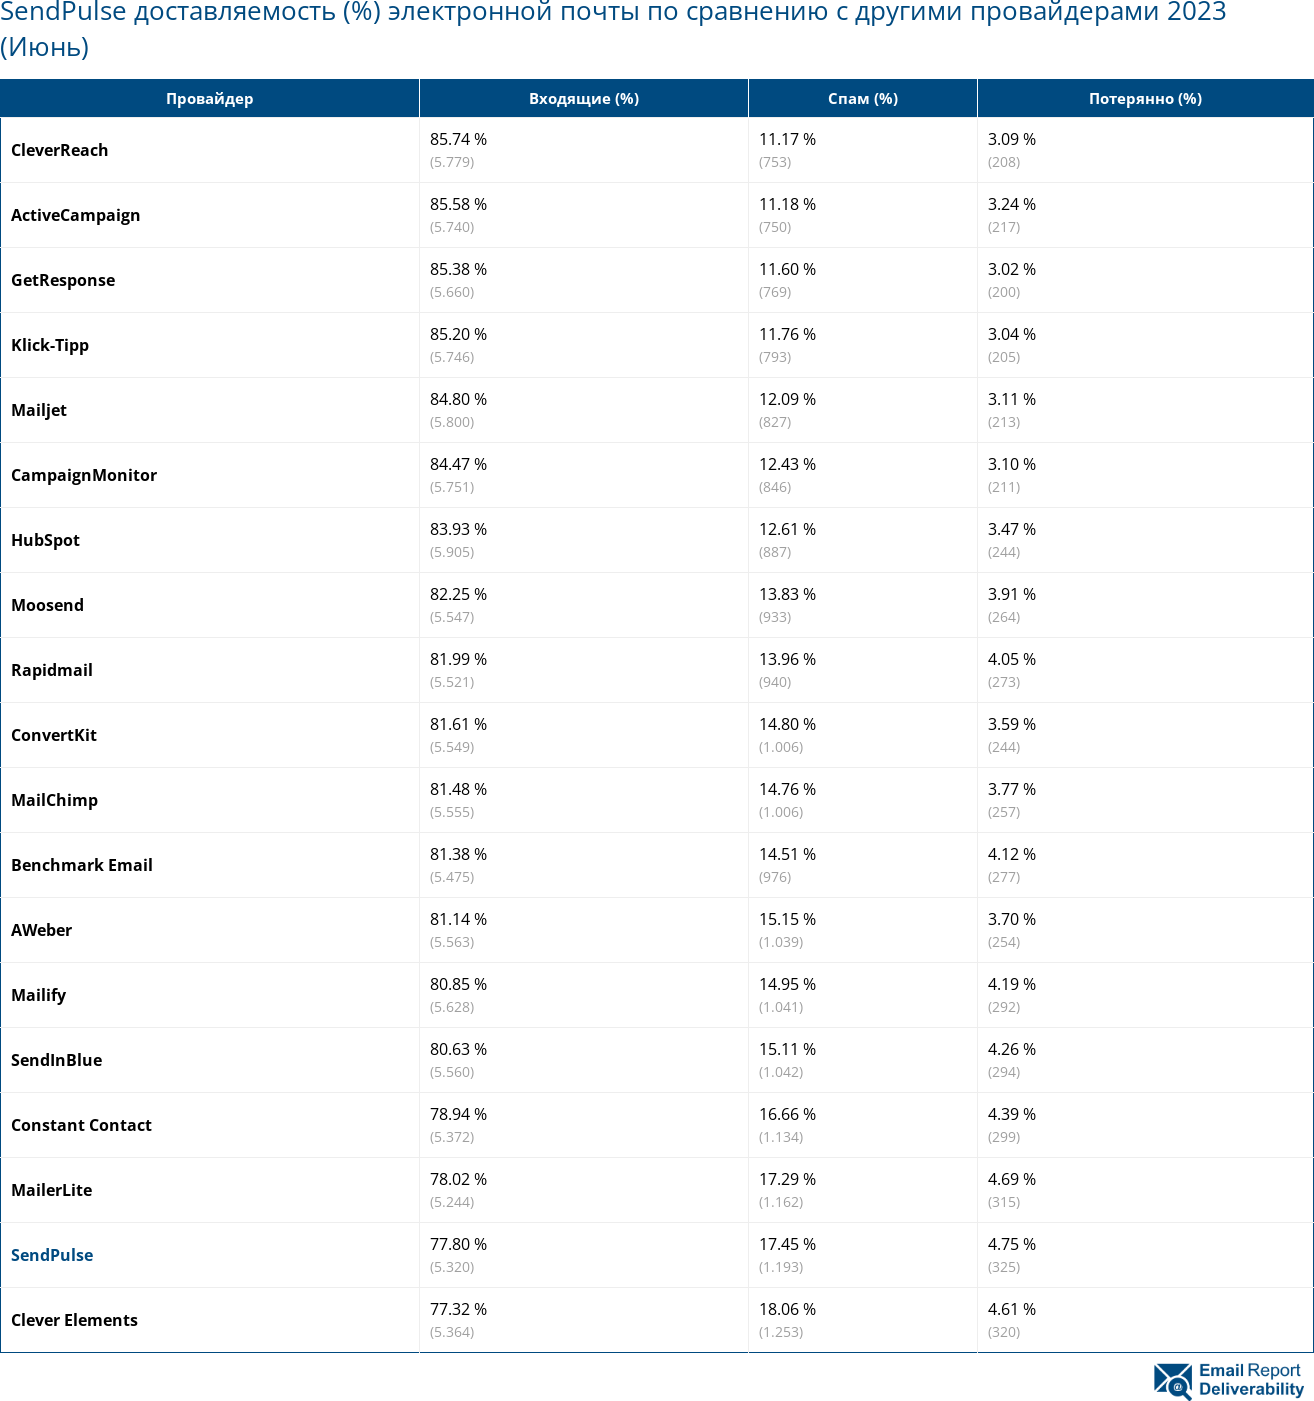 SendPulse доставляемость (%) электронной почты по сравнению с другими провайдерами 2023 (Июнь)